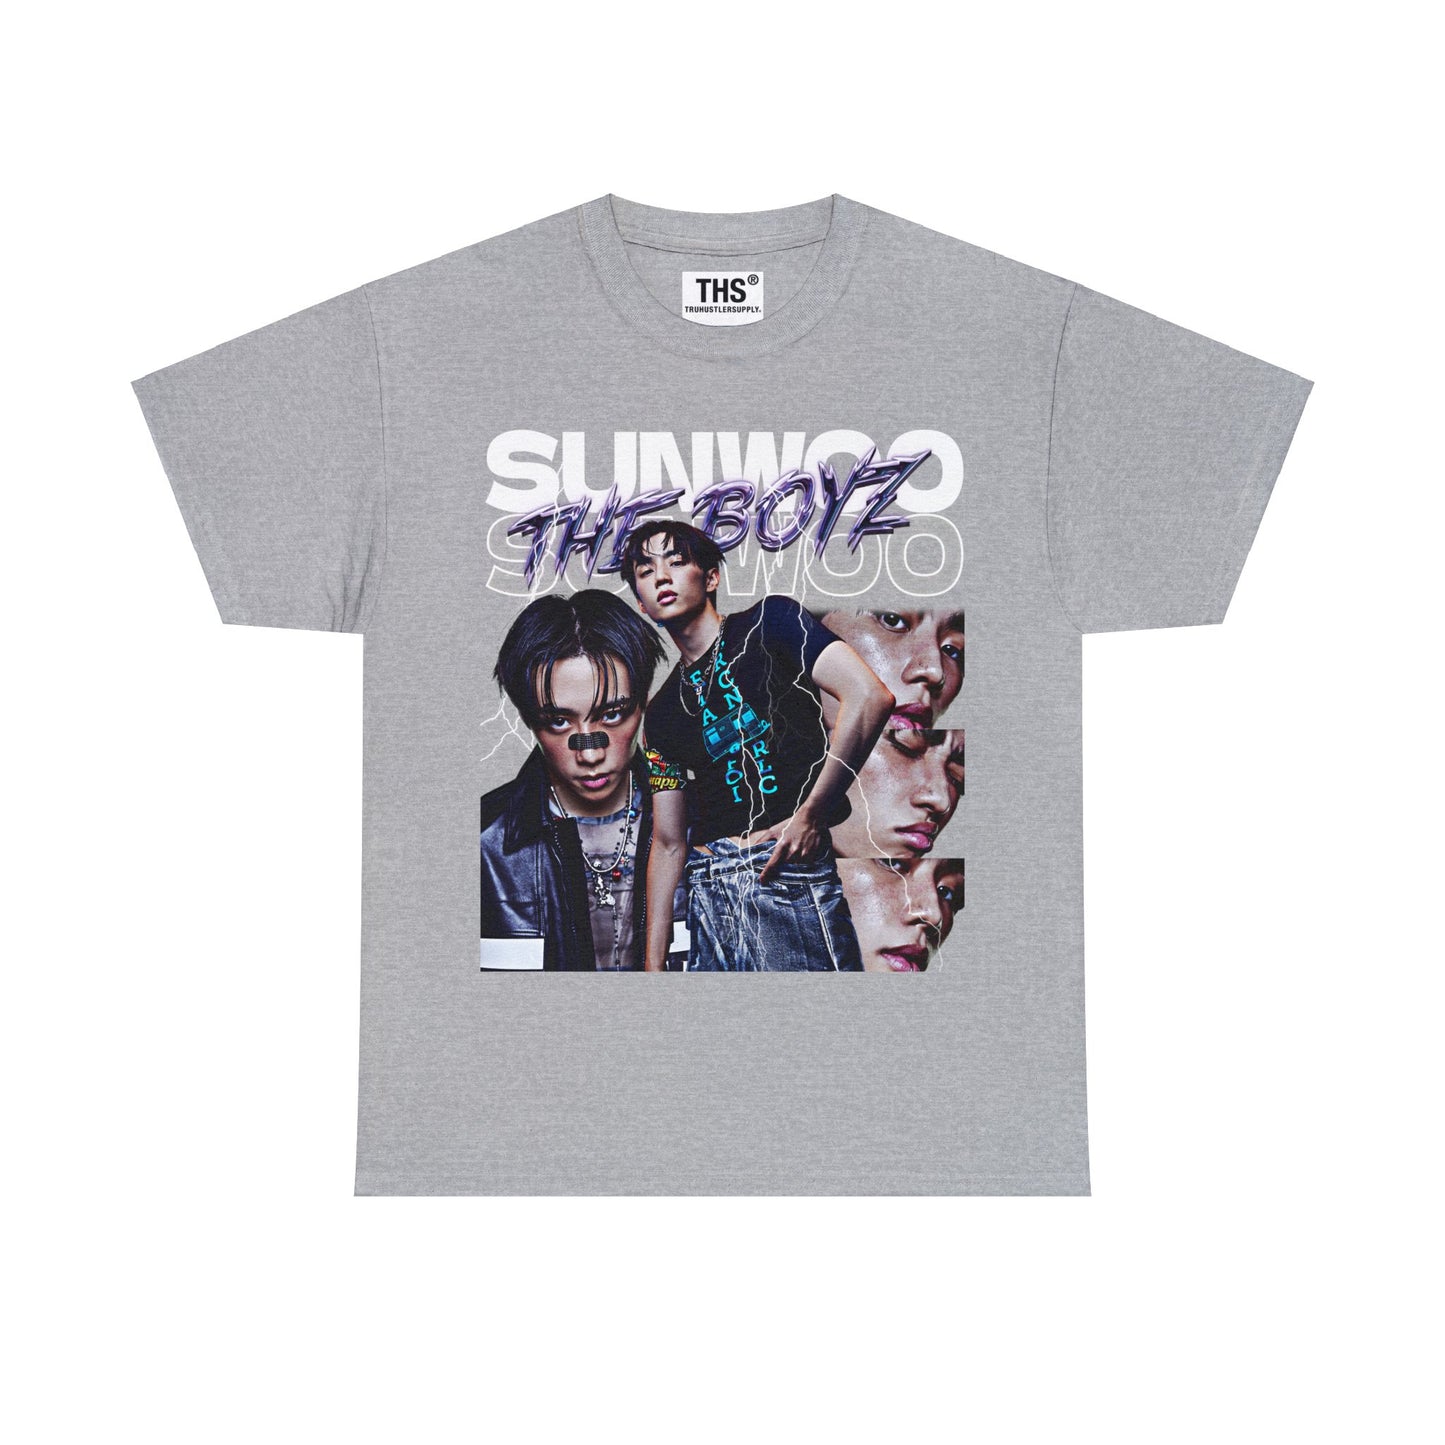 Sunwoo Bootleg Graphic T-Shirt